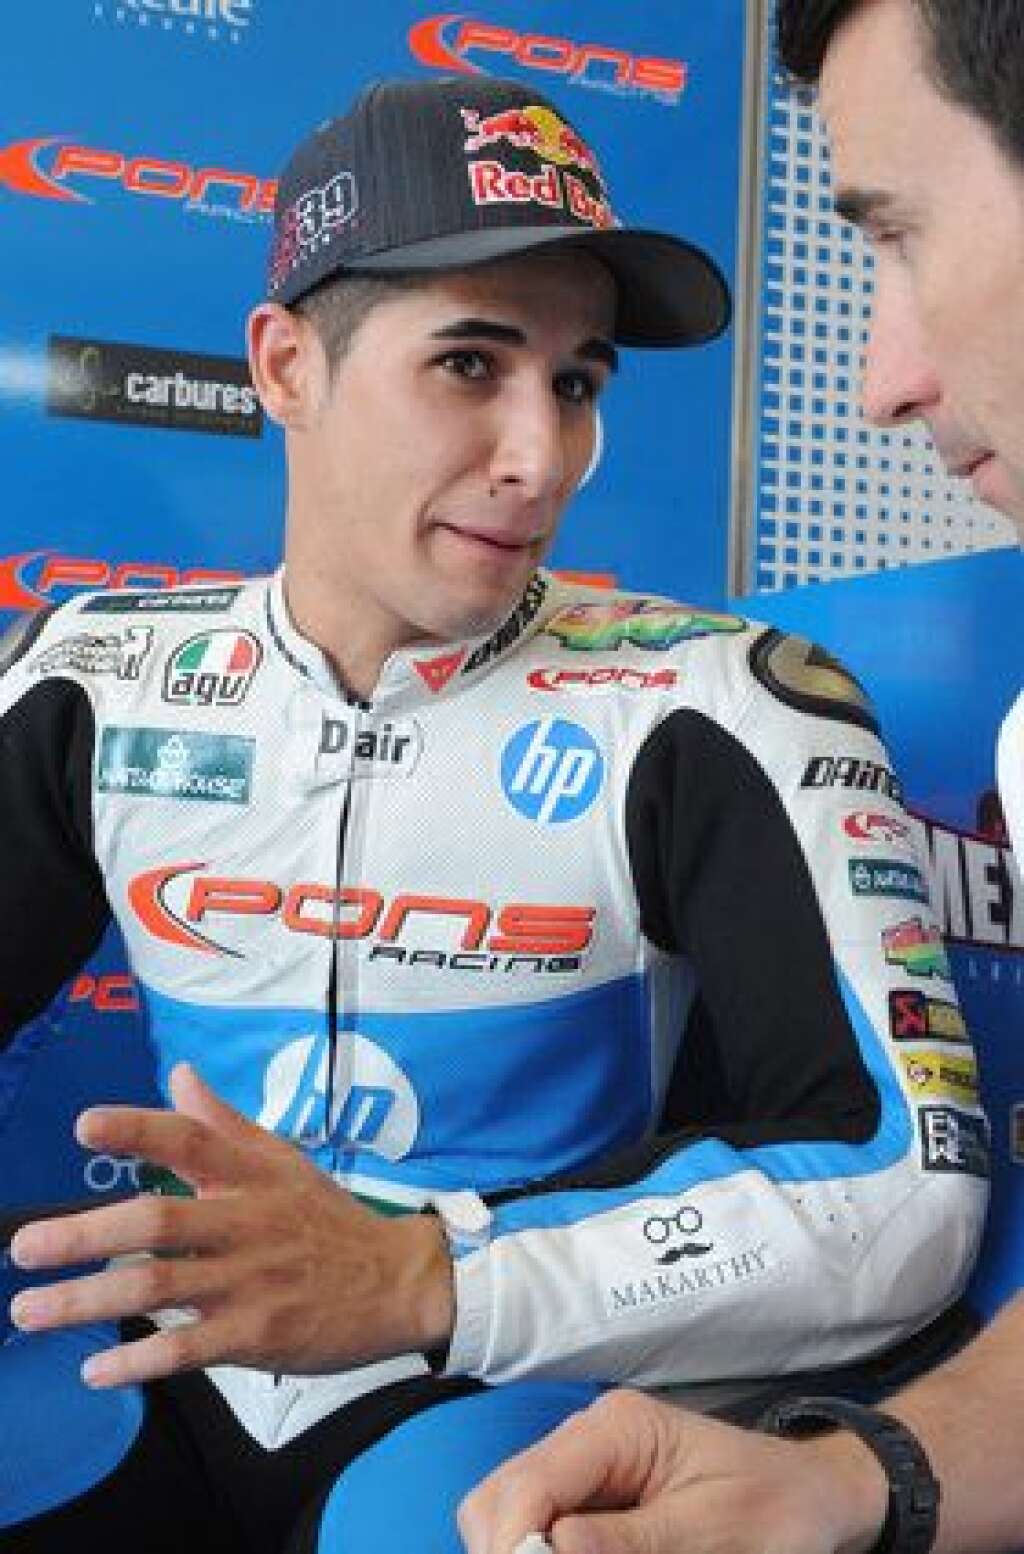 3 juin - Luis Salom - L'Espagnol Luis Salom, 24 ans, s'est tué vendredi après une chute lors de la deuxième séance d'essais libres de Moto 2 du Grand Prix de Catalogne, qui doit se disputer dimanche sur le circuit de Montmelo.  Alors qu'il restait moins d'une demi-heure de session, le pilote de SAG Team a chuté dans le virage 12. <a href="http://www.bbc.com/sport/motorsport/36447935" target="_hplink">Transféré dans un hôpital voisin, il n'a pu être ranimé</a>.